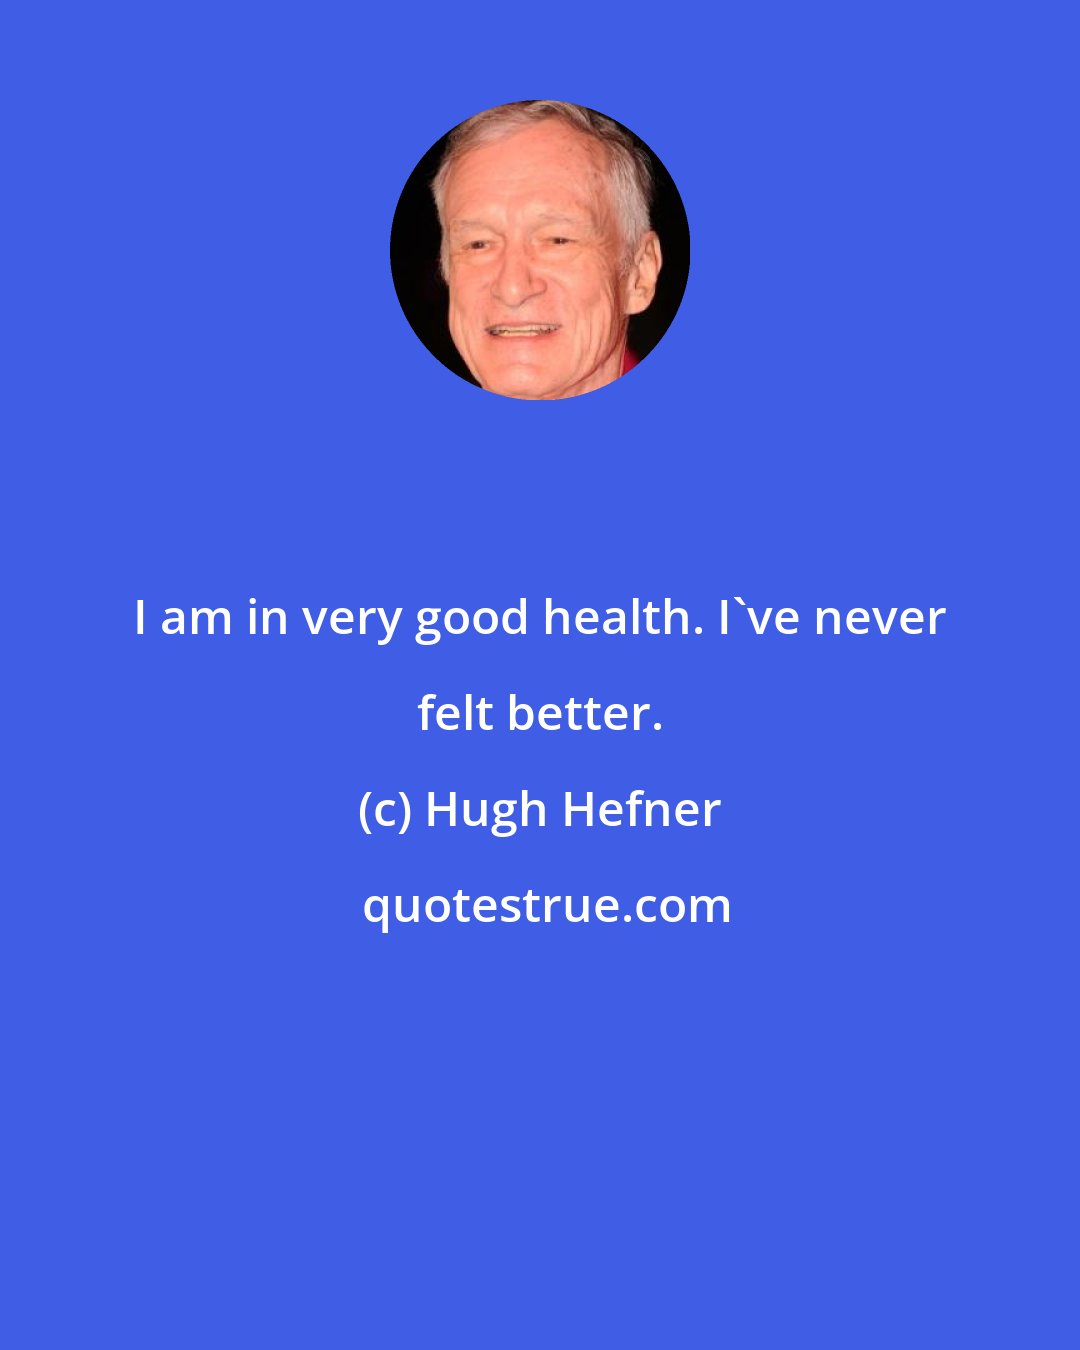 Hugh Hefner: I am in very good health. I've never felt better.